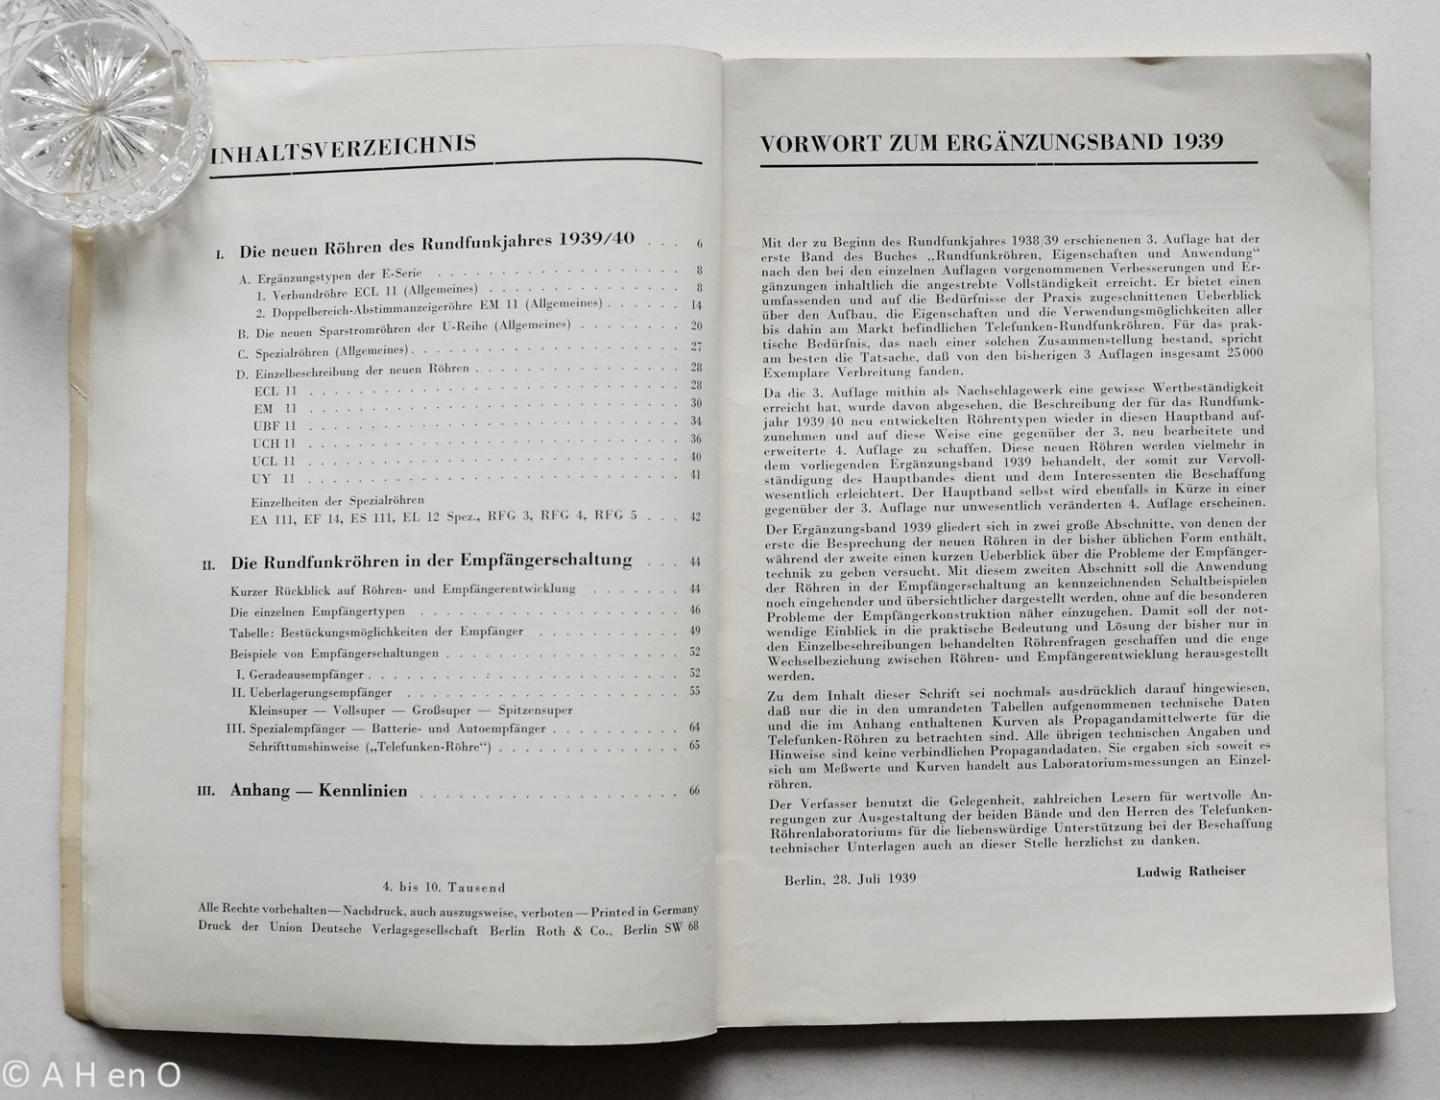 Ratheiser, Ludwig - Rundfunkröhren ; Eigenschaften und Anwendung ; Ergänzungsband 1939 zur 3. und 4. Auflage